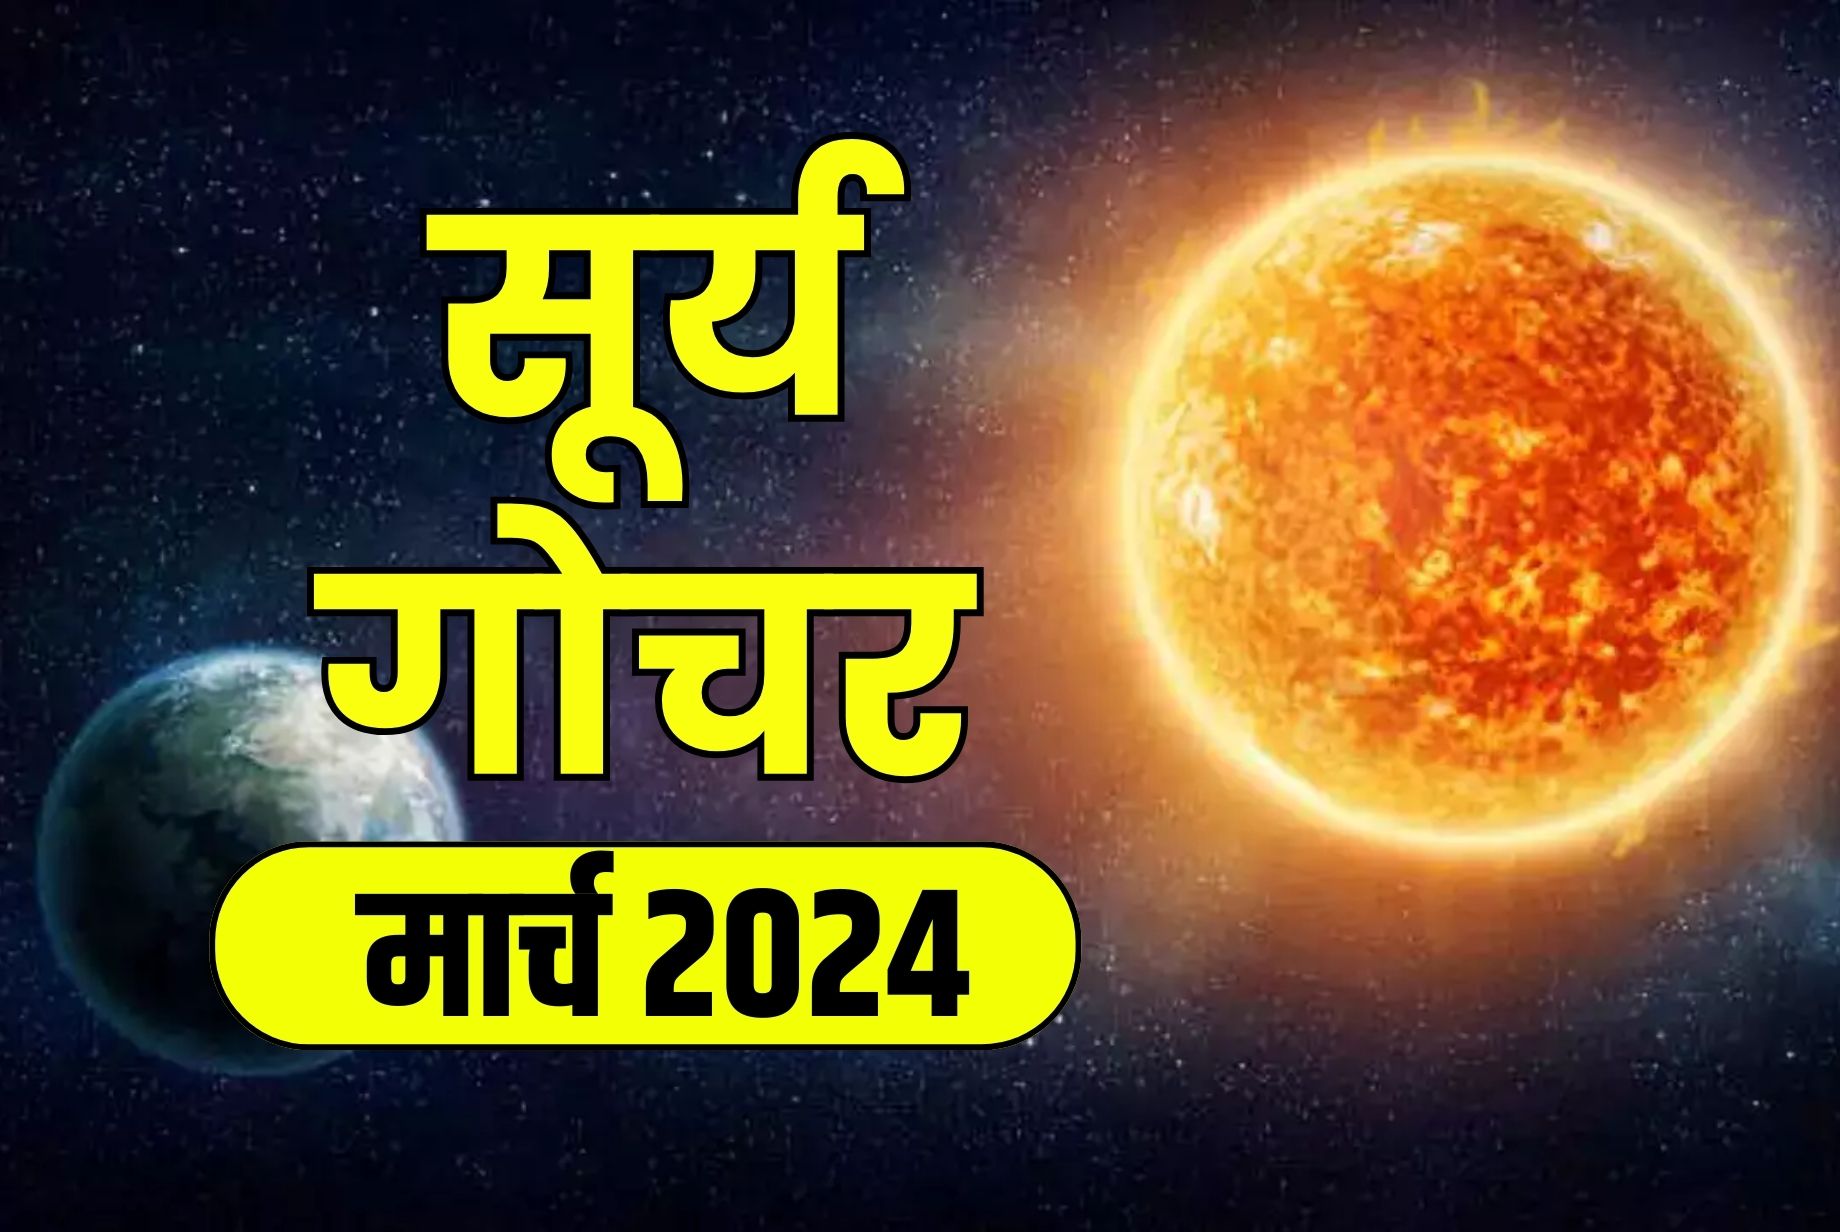 Surya Gochar 2024: मार्च माह में सूर्य के गोचर से चमक उठेगी तकदीर.. प्रेम विवाह के बन रहे हैं योग, इस राशि के जातक हो जायेंगे मालामाल